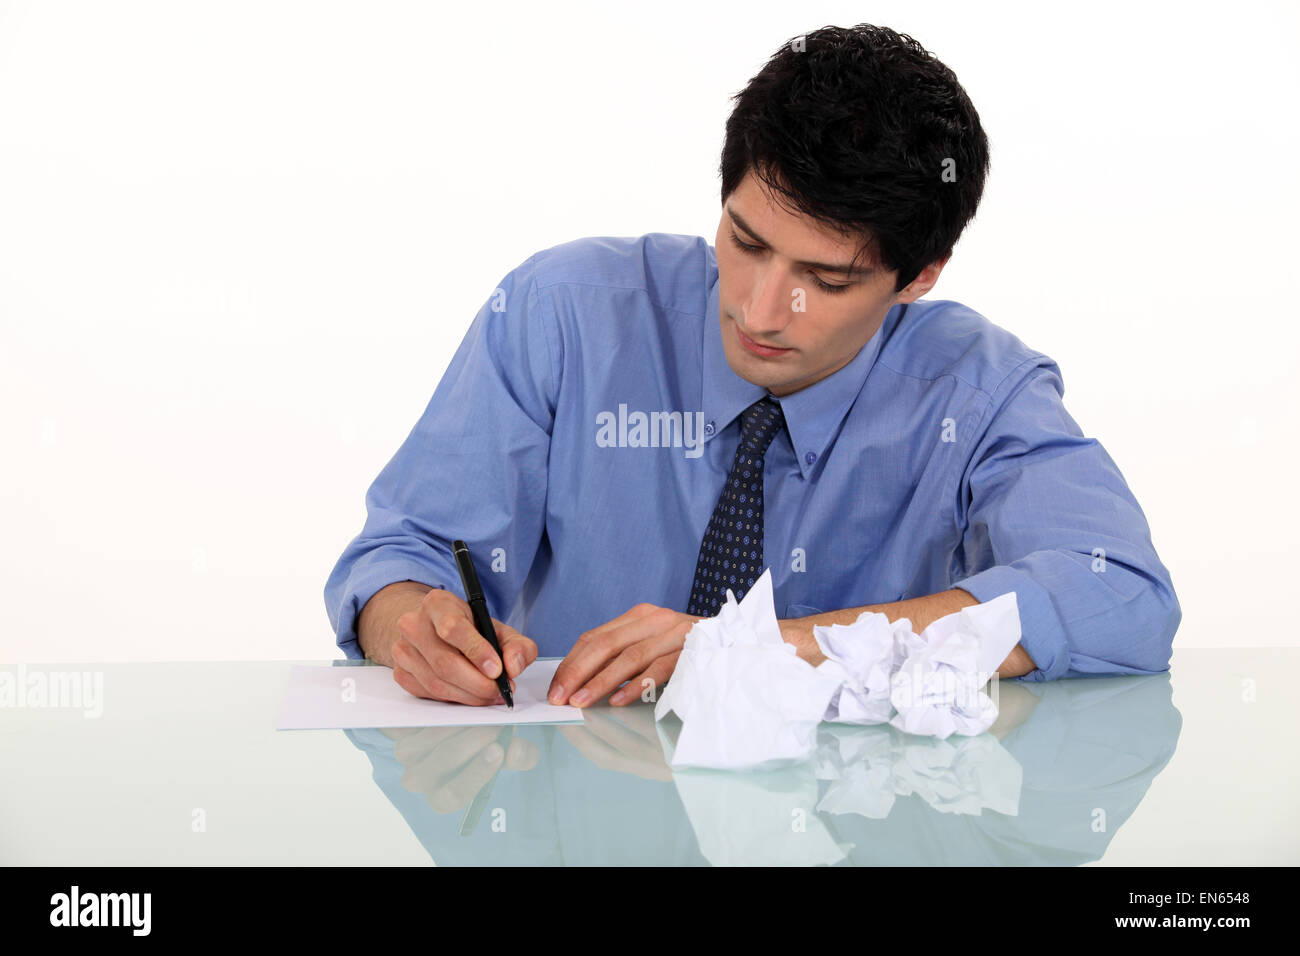 Write human. Мужчина писает. Человек пишет на белом фоне. Парень пишет на белом фоне. Человек пишет за столом.